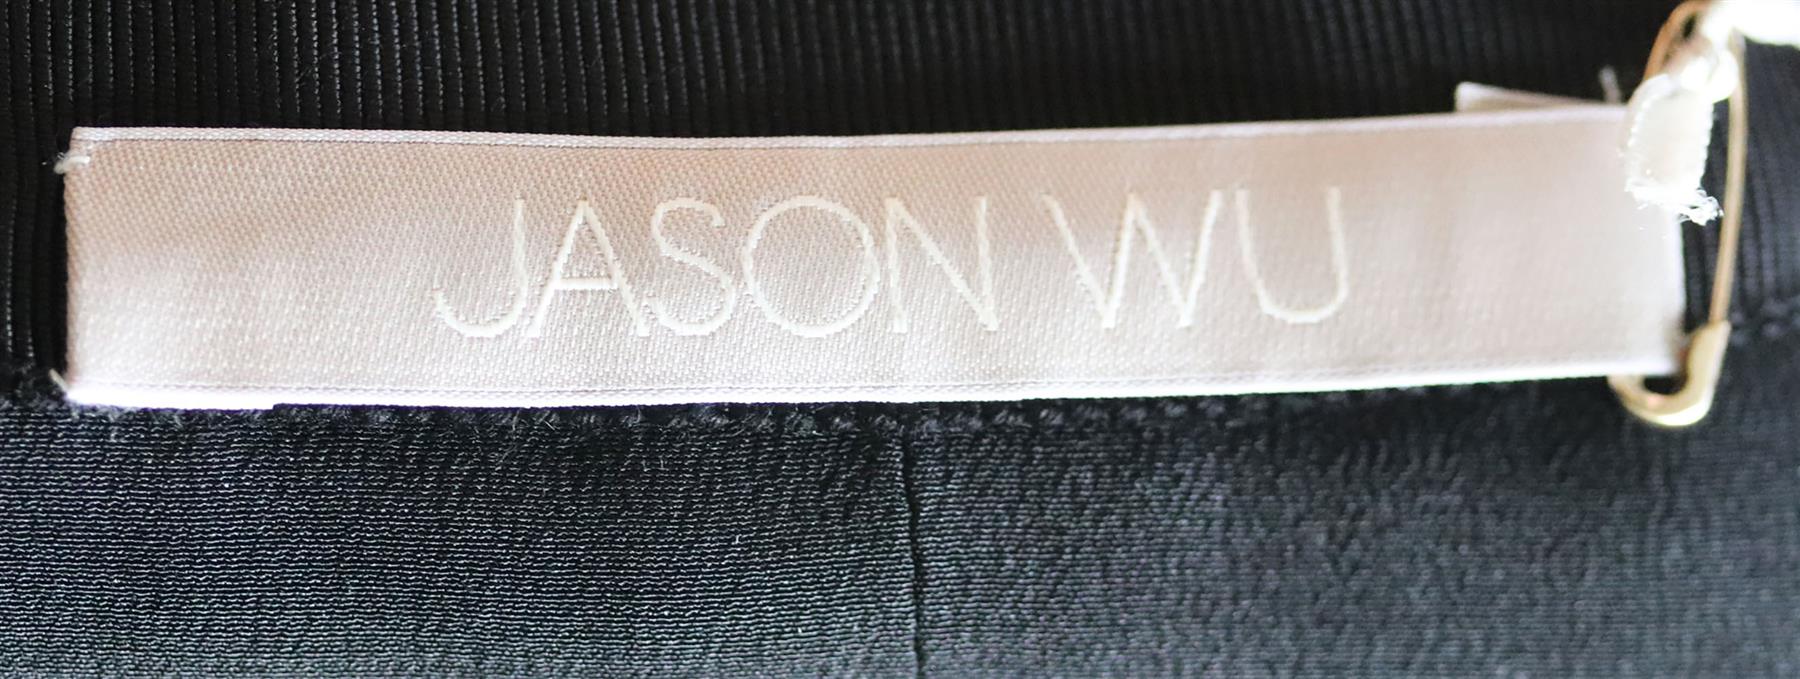 JASON WU COLLECTION PLISSE SILK CHIFFON DRESS US 6 UK 10